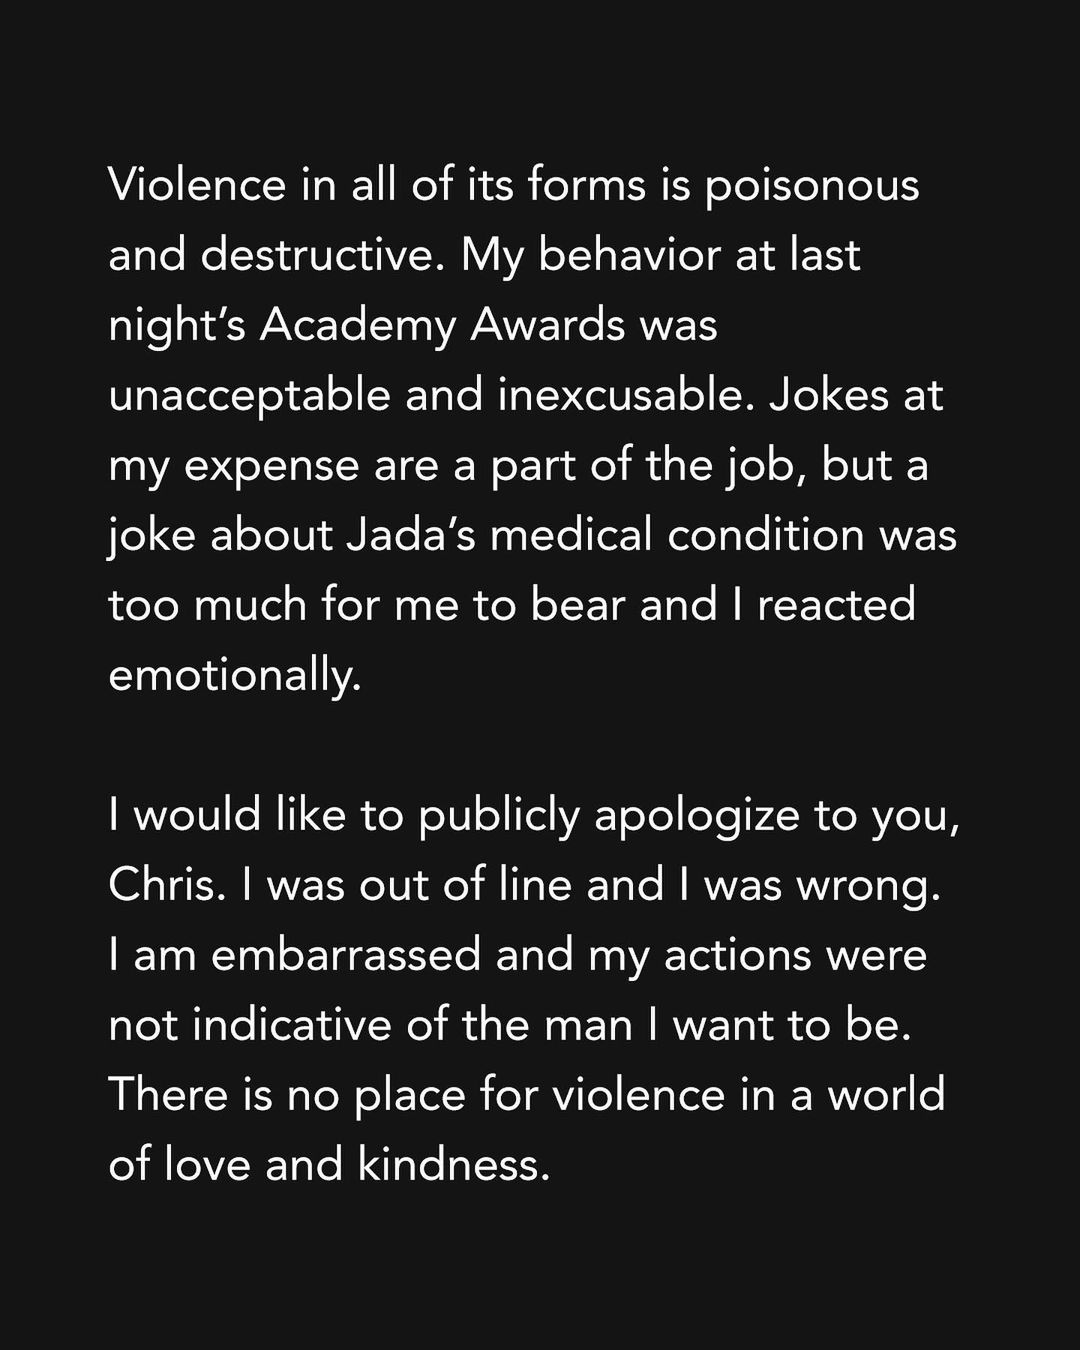 Will Smith xin lỗi Chris Rock vì Hành vi “Không thể chấp nhận và không thể bào chữa được” tại lễ trao giải Oscar - Ảnh 2